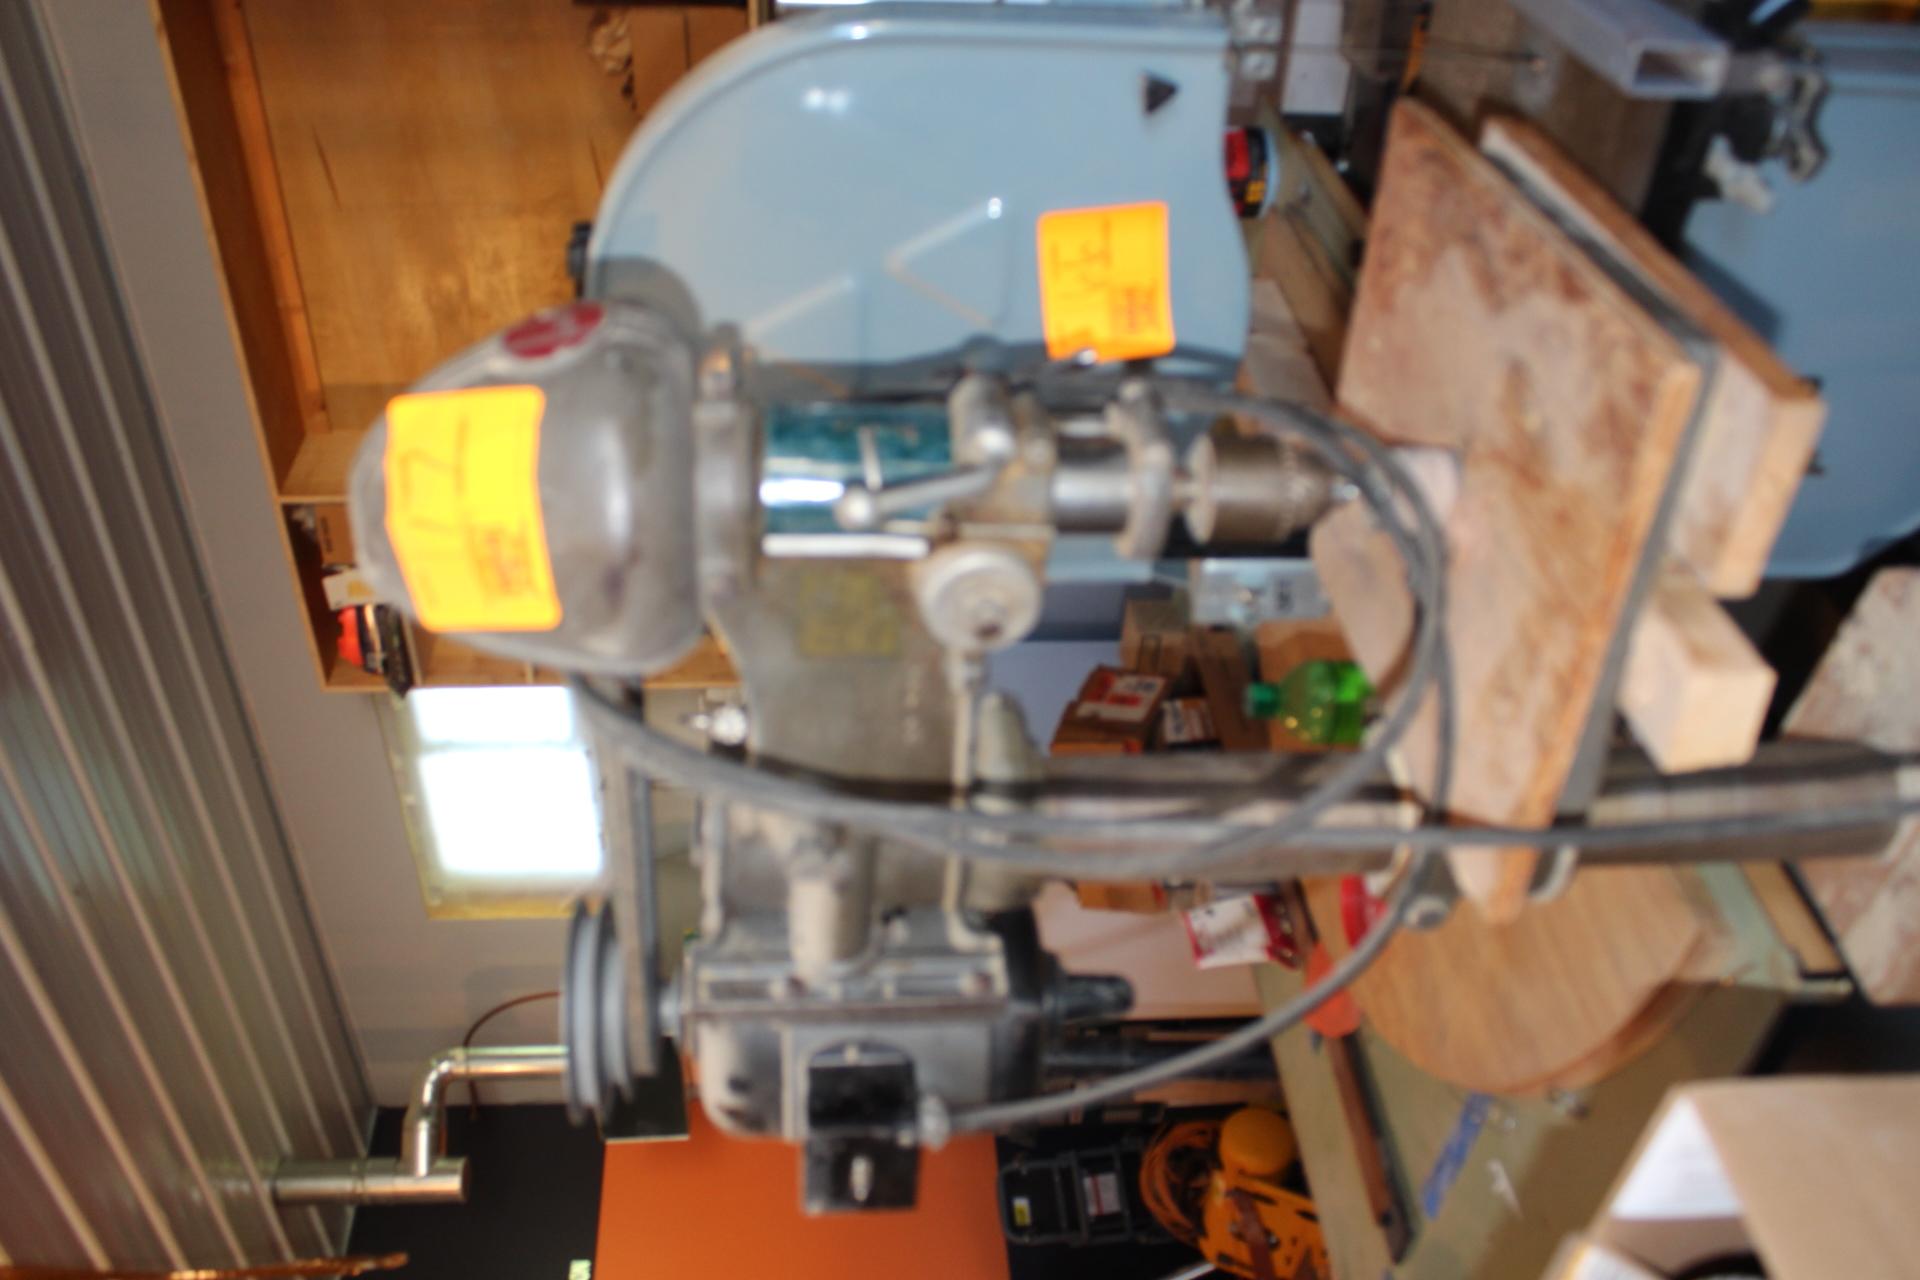 Delta Floor Model Drill Press, 5 Speed